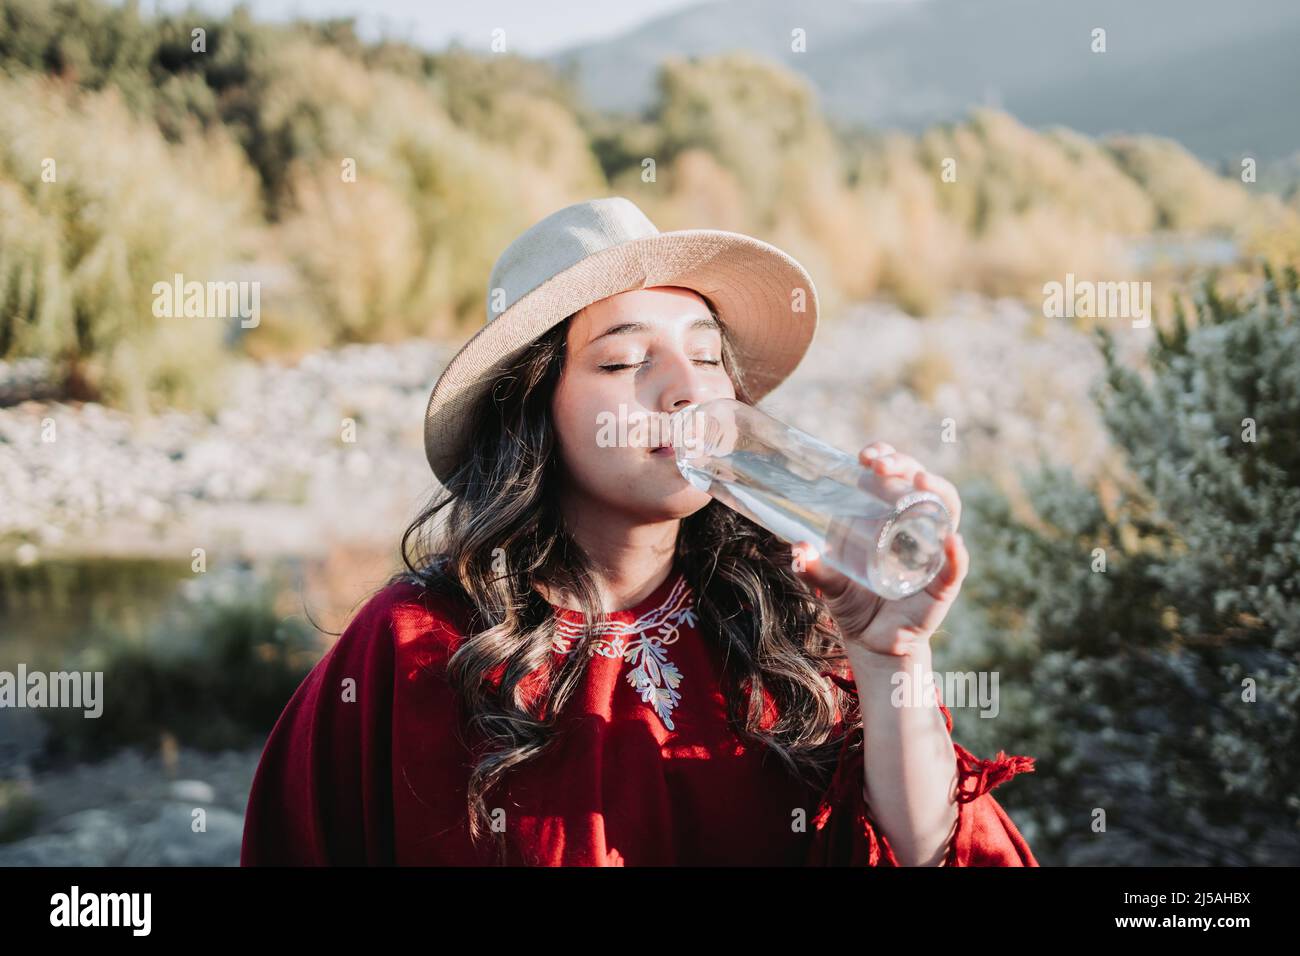 Giovane donna latino-americana che usa abiti tradizionali, bevendo acqua in una bottiglia di vetro. Foto Stock